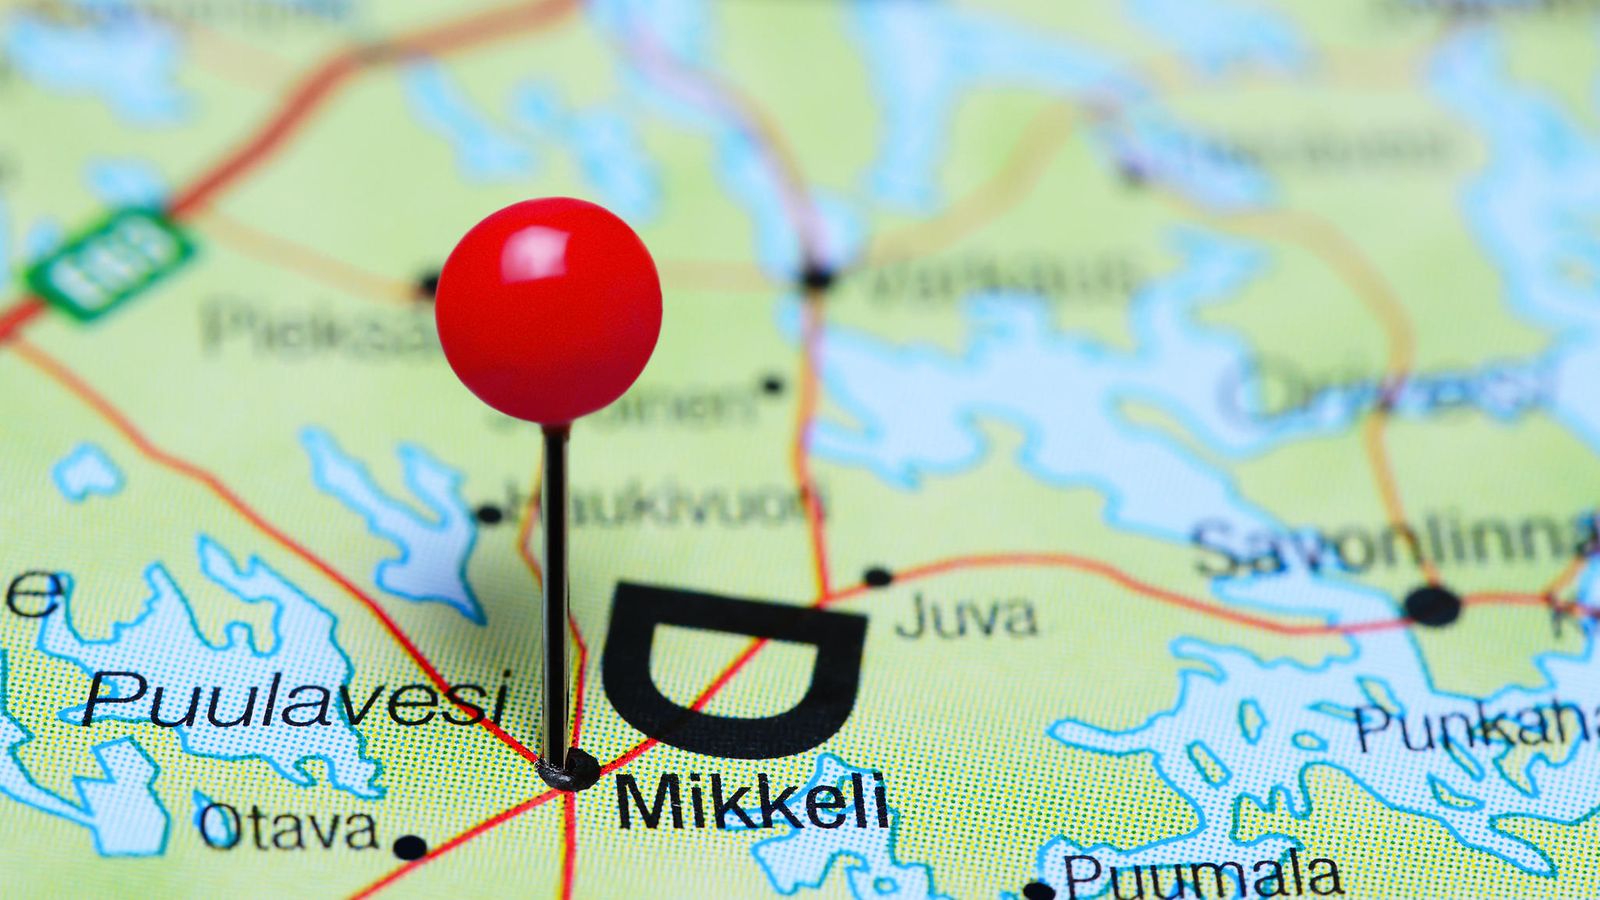 Poliisi lopetti seksuaalirikostutkinnan, jossa yliopiston työntekijää  epäiltiin alaisiin kohdistuneista hyväksikäytöistä Mikkelissä -  